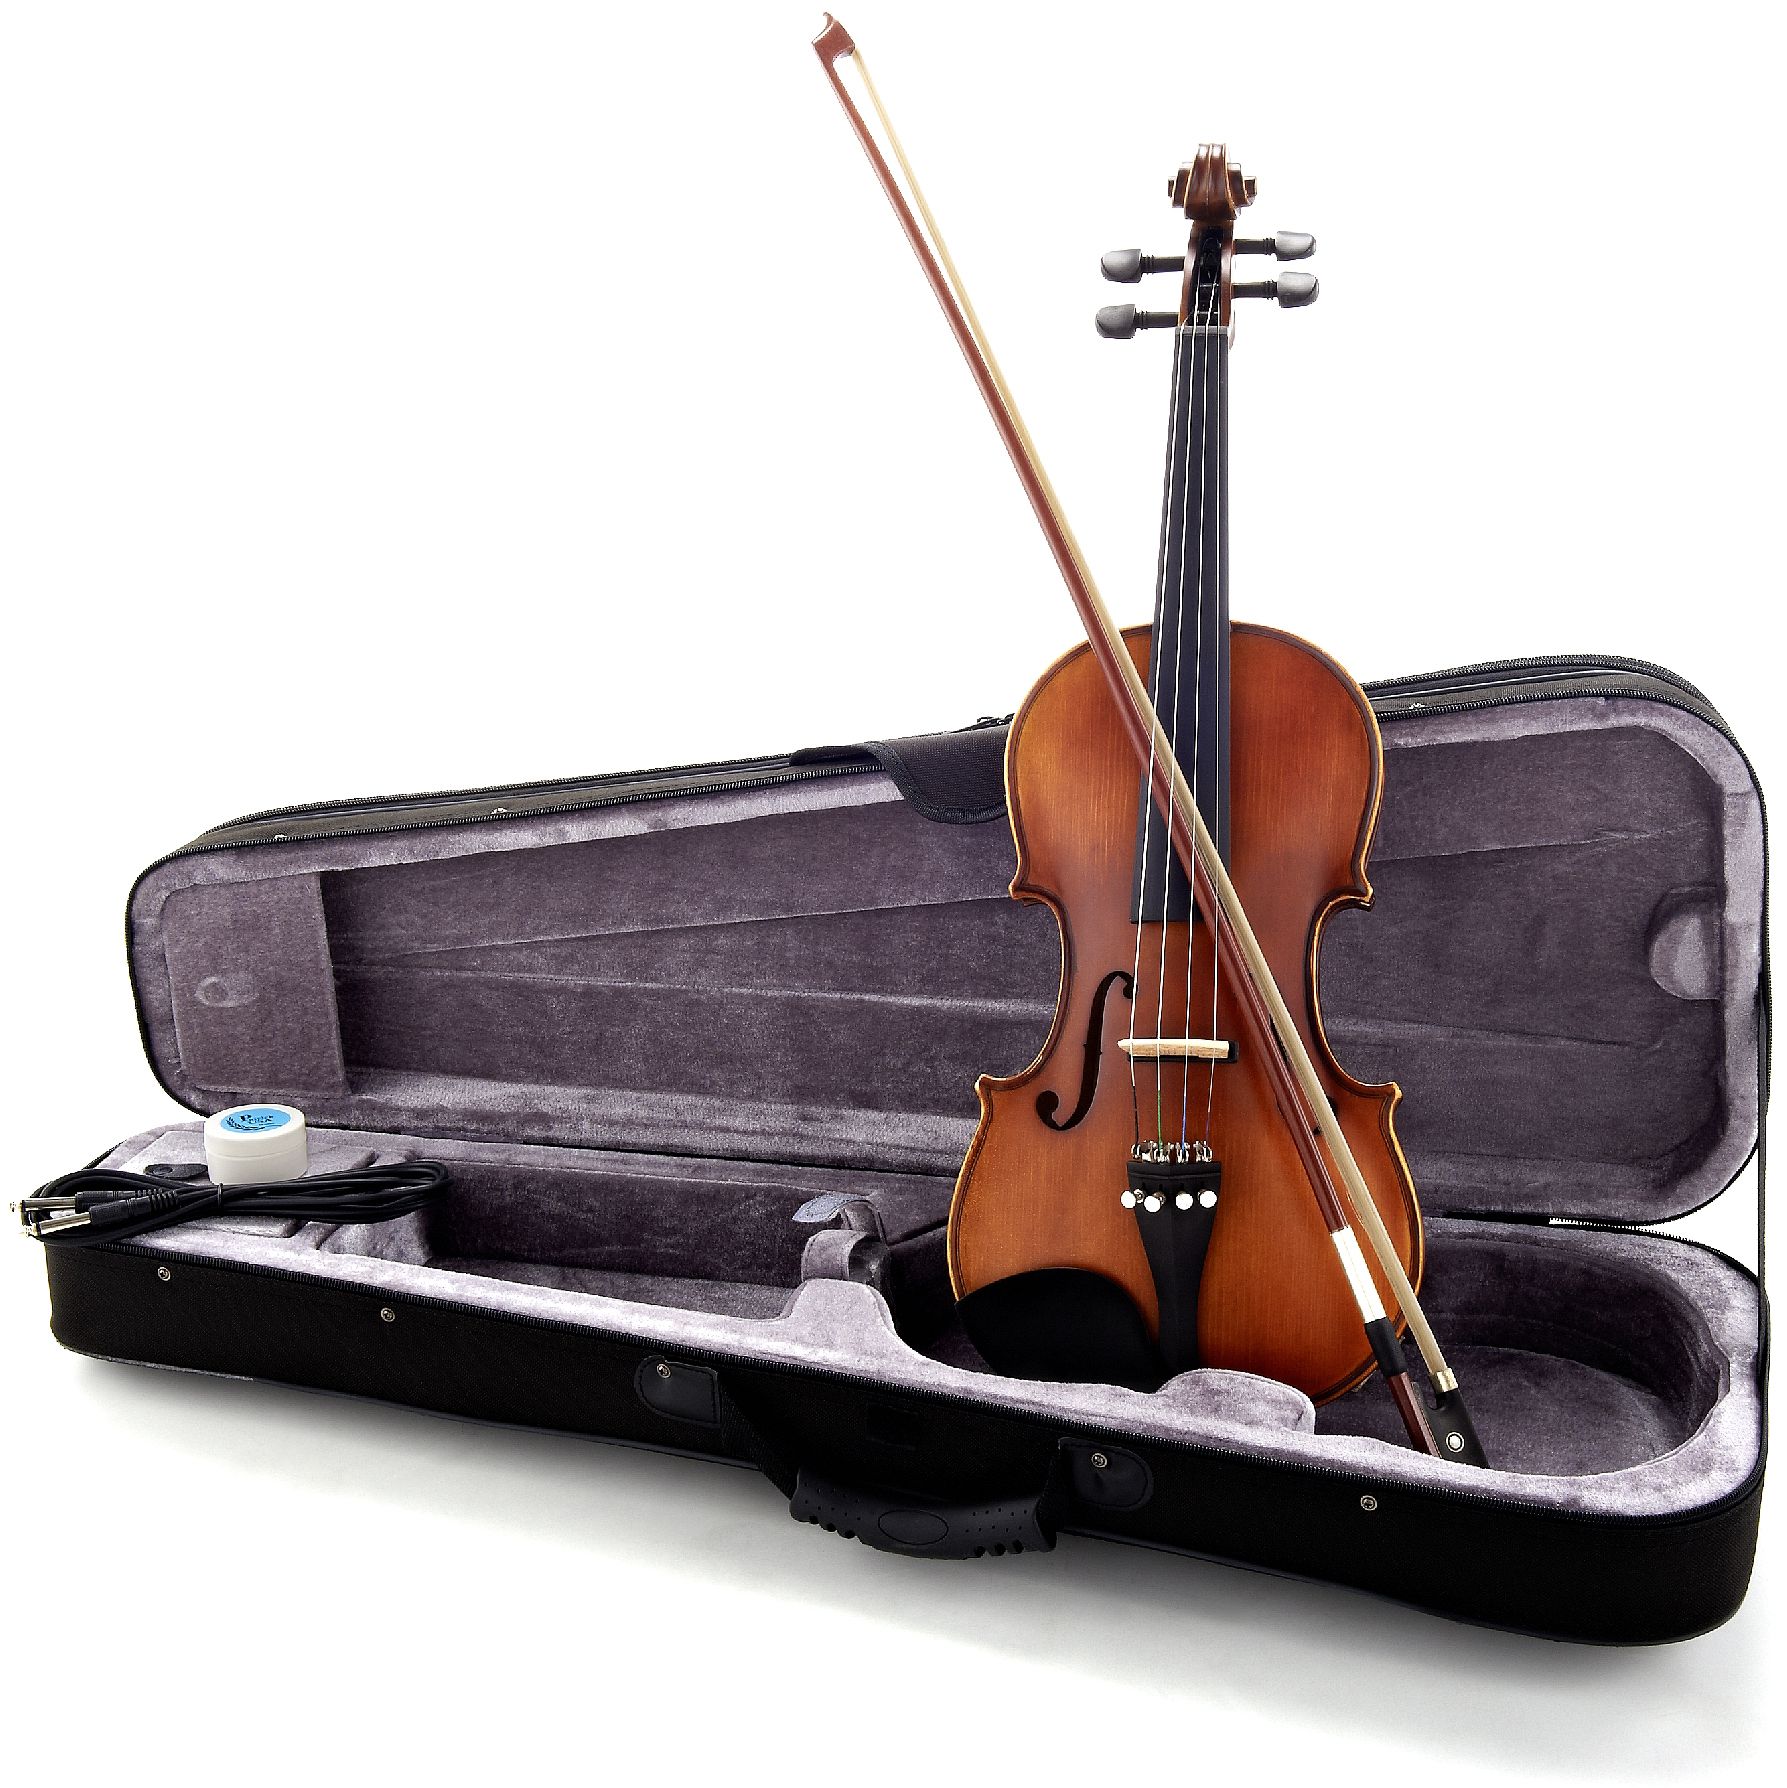 E violins. Harley Benton электроскрипка. Harley Benton HBV 870y 4/4 Electric Violin. 124 Cellos instrument.